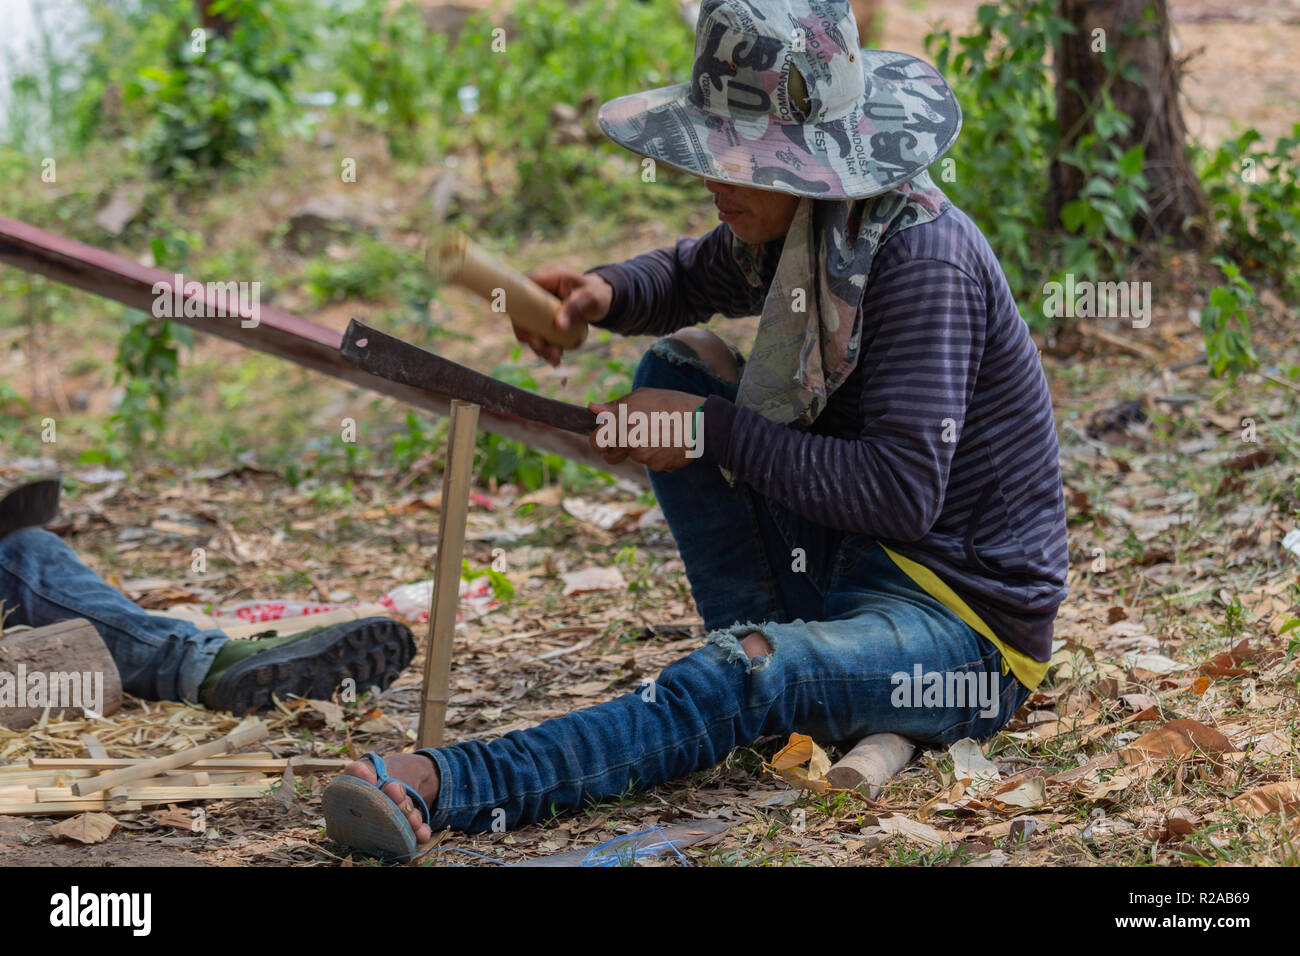 Don Det, Laos - Abril 24, 2018: Local hombre haciendo trabajos manuales con bambú cerca del río Mekong Foto de stock